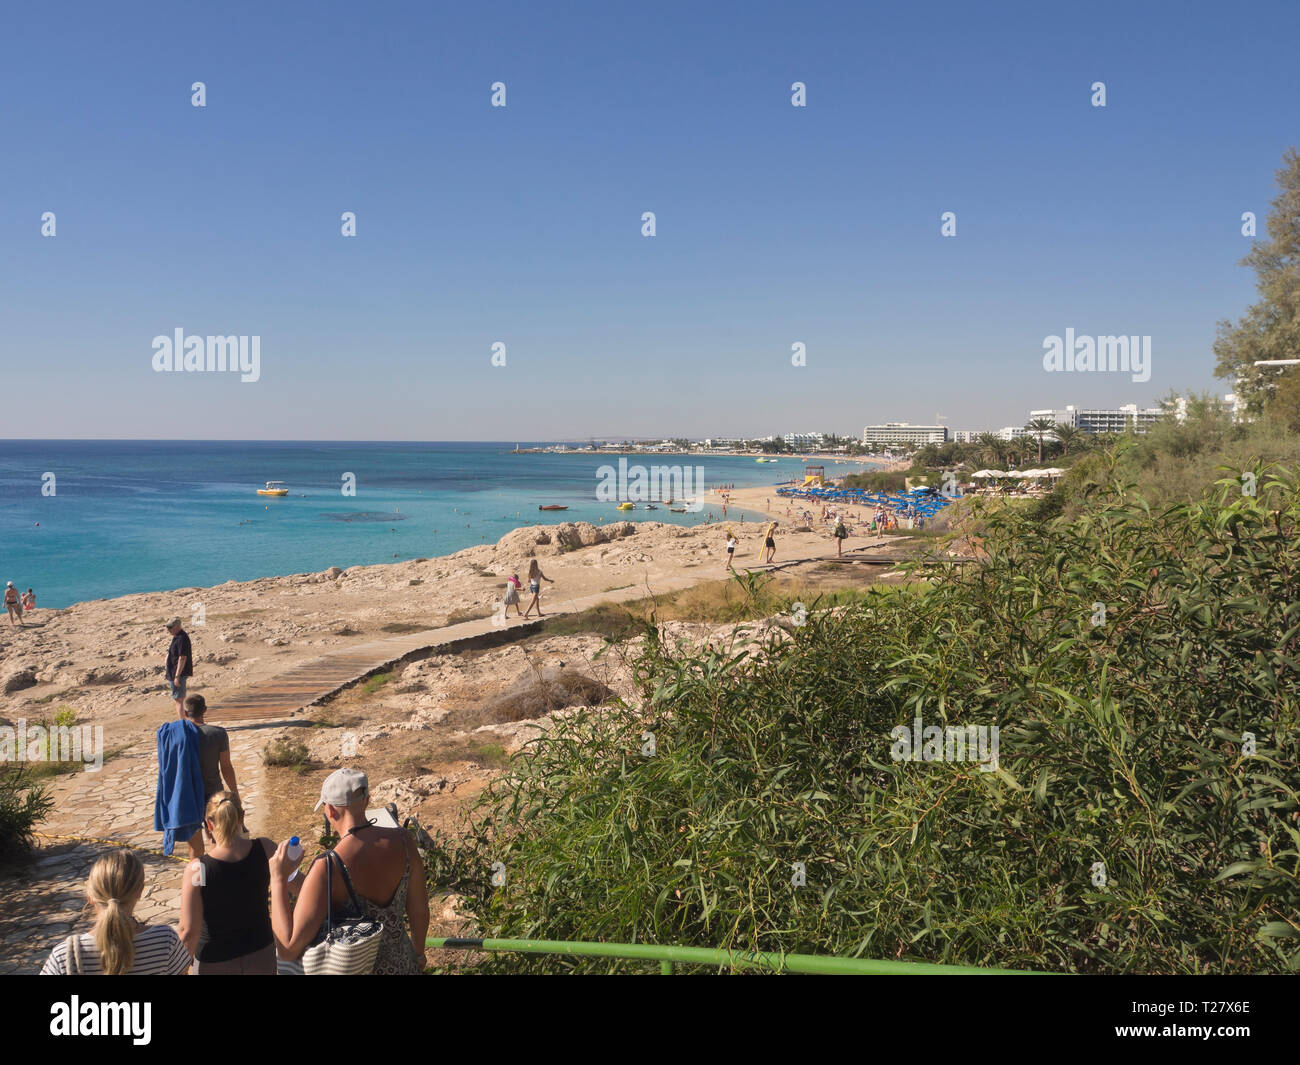 Sonne und Meer, Klippen und Strand, Touristen und Hotels die Essenz eines erfolgreichen Urlaub in Ayia Napa Zypern Stockfoto